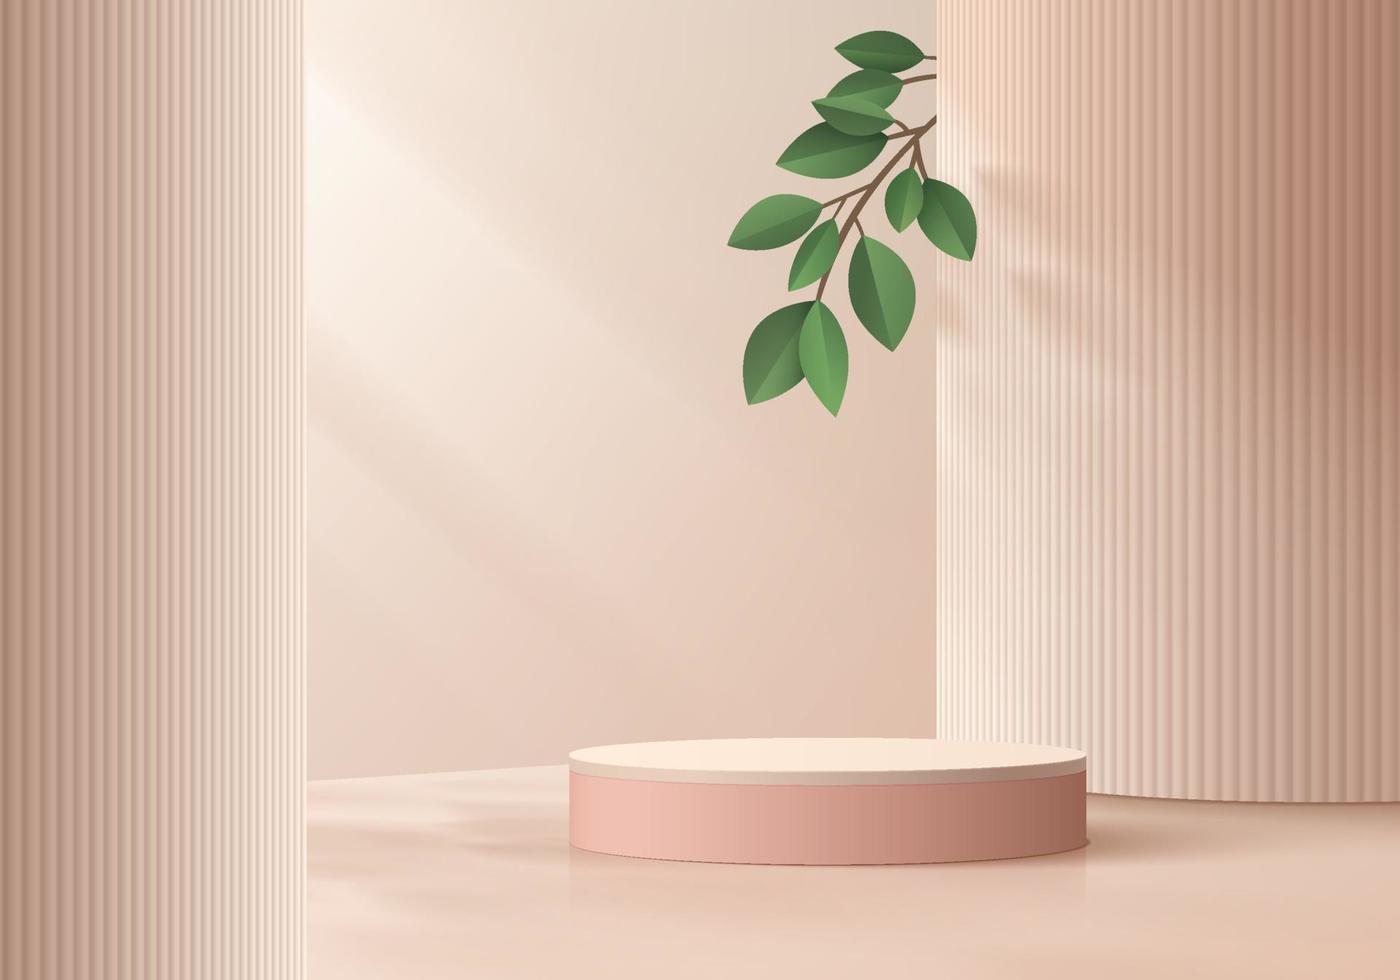 podio de pedestal de cilindro 3d rosa realista con pilar beige y fondo de hoja verde. formas geométricas vectoriales de lujo. escena mínima abstracta para productos de maqueta, escaparate de escenario, exhibición de promoción. vector